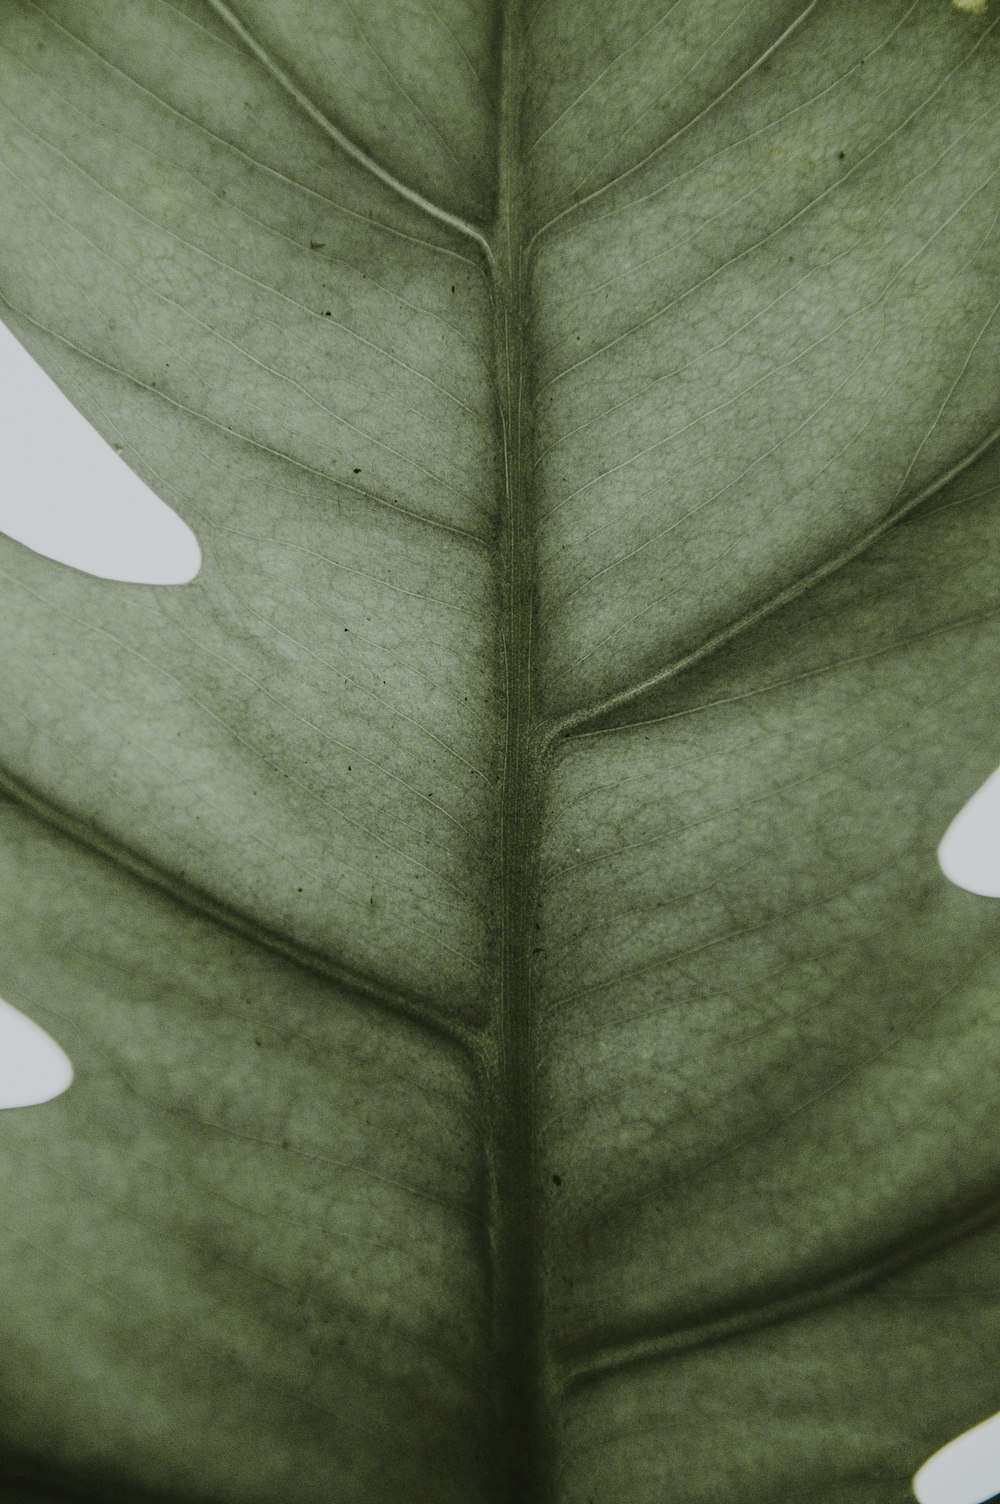 eine Nahaufnahme eines grünen Blattes mit weißen Flecken